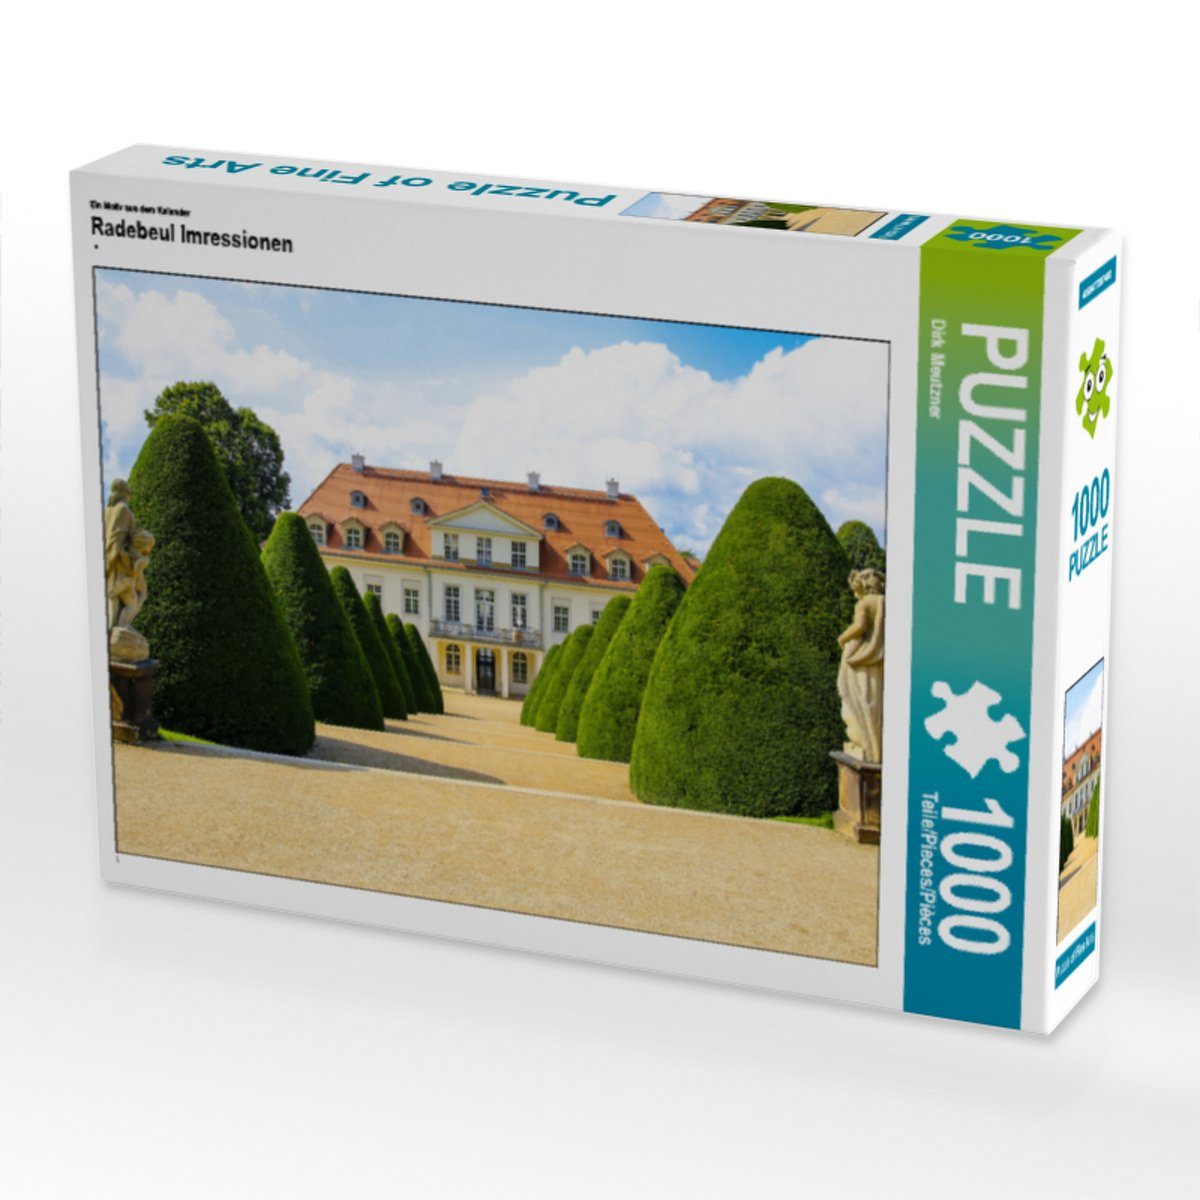 x Puzzle Bild Dirk Imressionen Teile Foto-Puzzle Puzzle CALVENDO Radebeul von 64 Meutzner, 1000 1000 48 Lege-Größe cm CALVENDO Puzzleteile